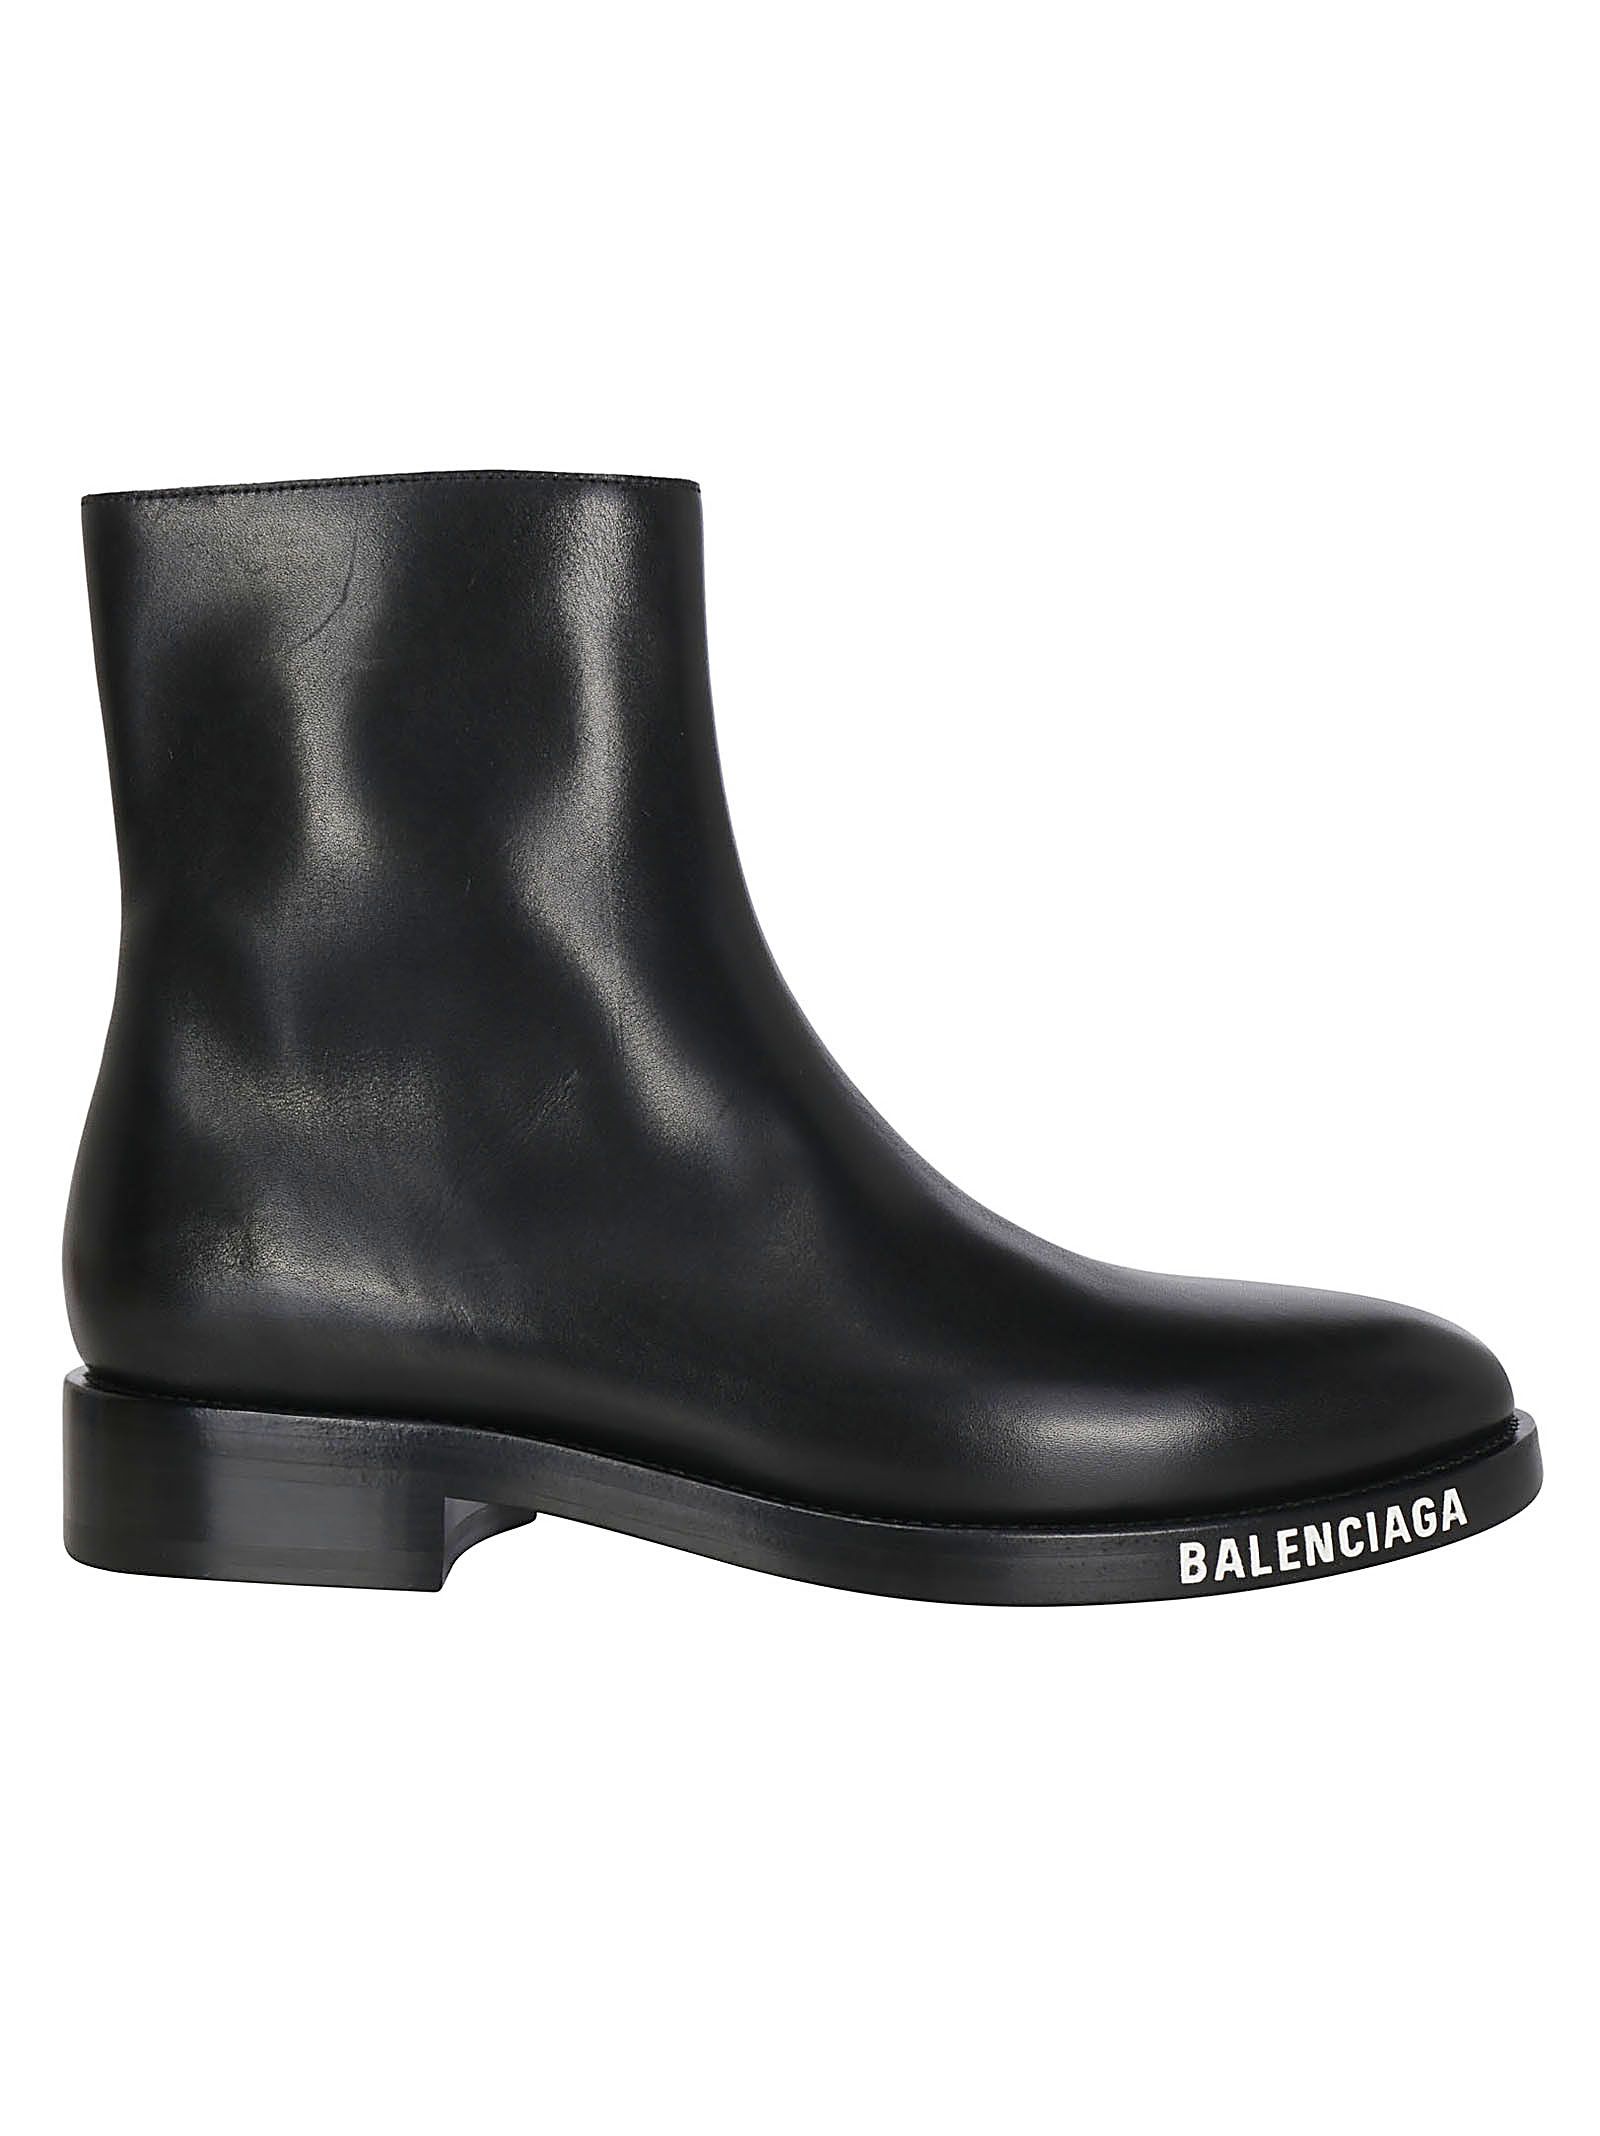 Balenciaga Boots | italist, ALWAYS LIKE 